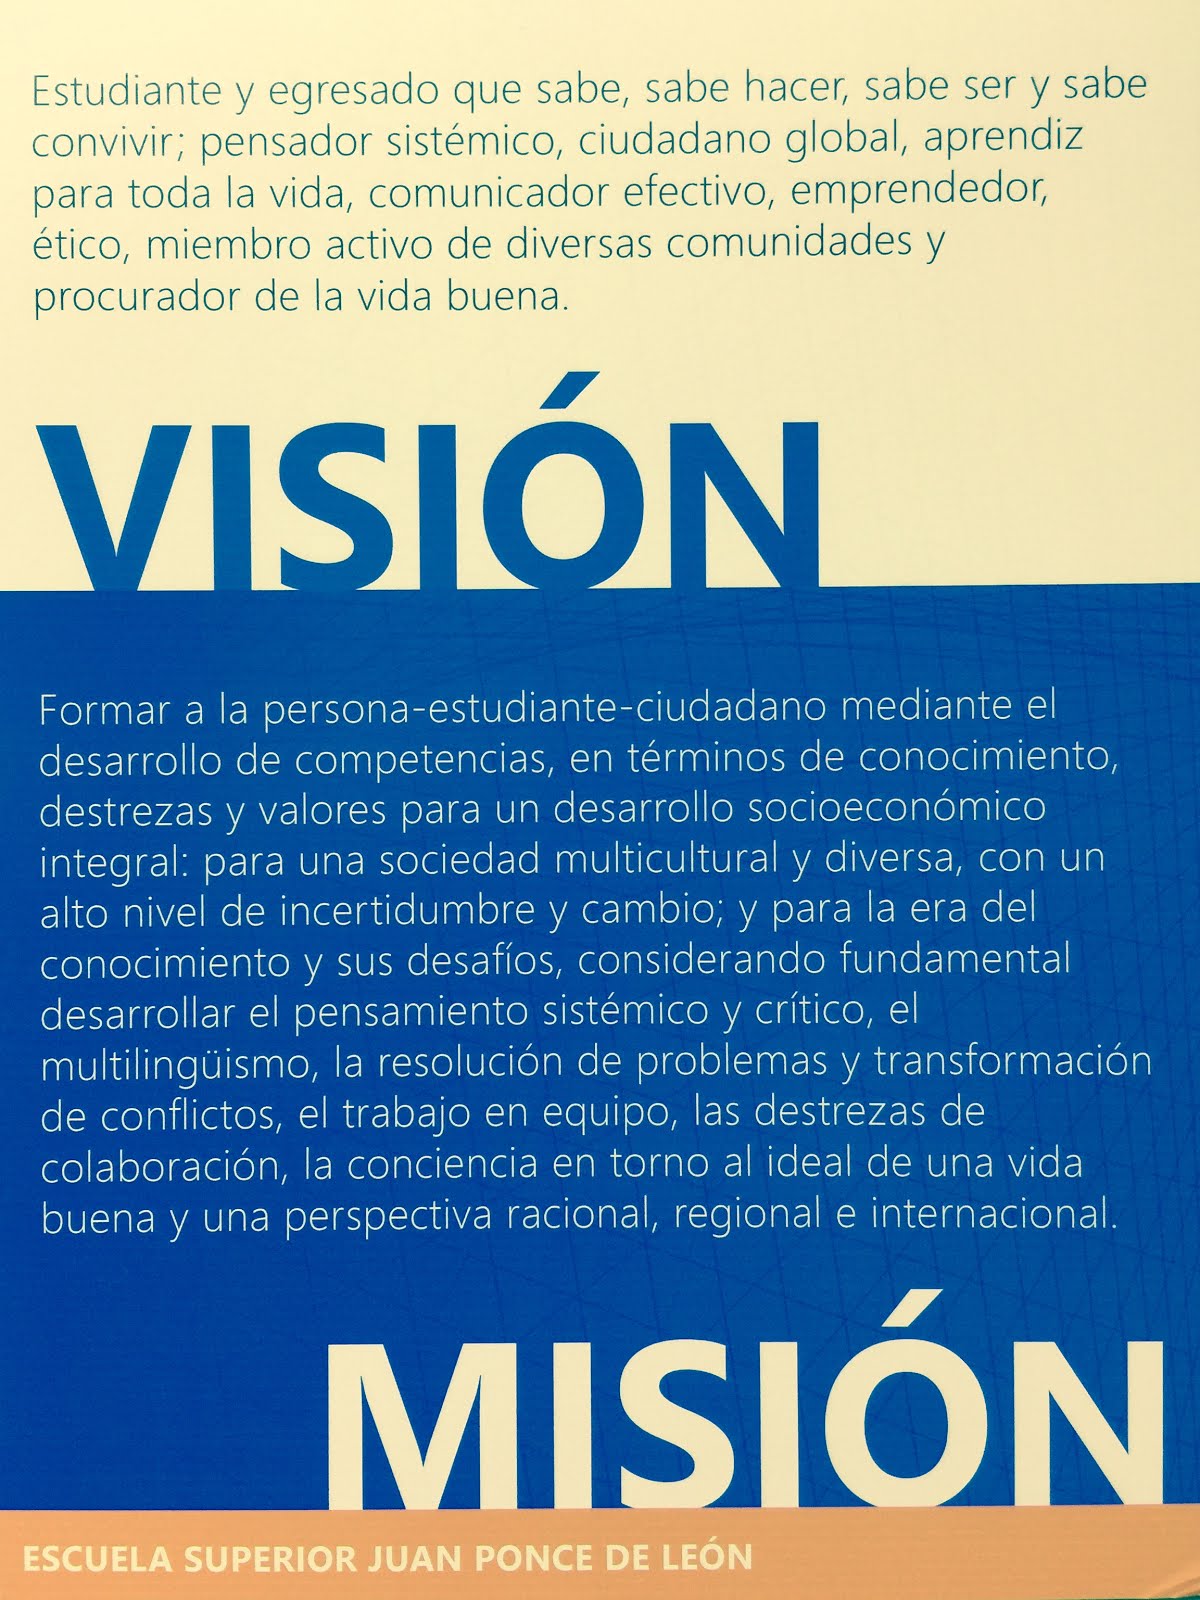 Visión y Misión